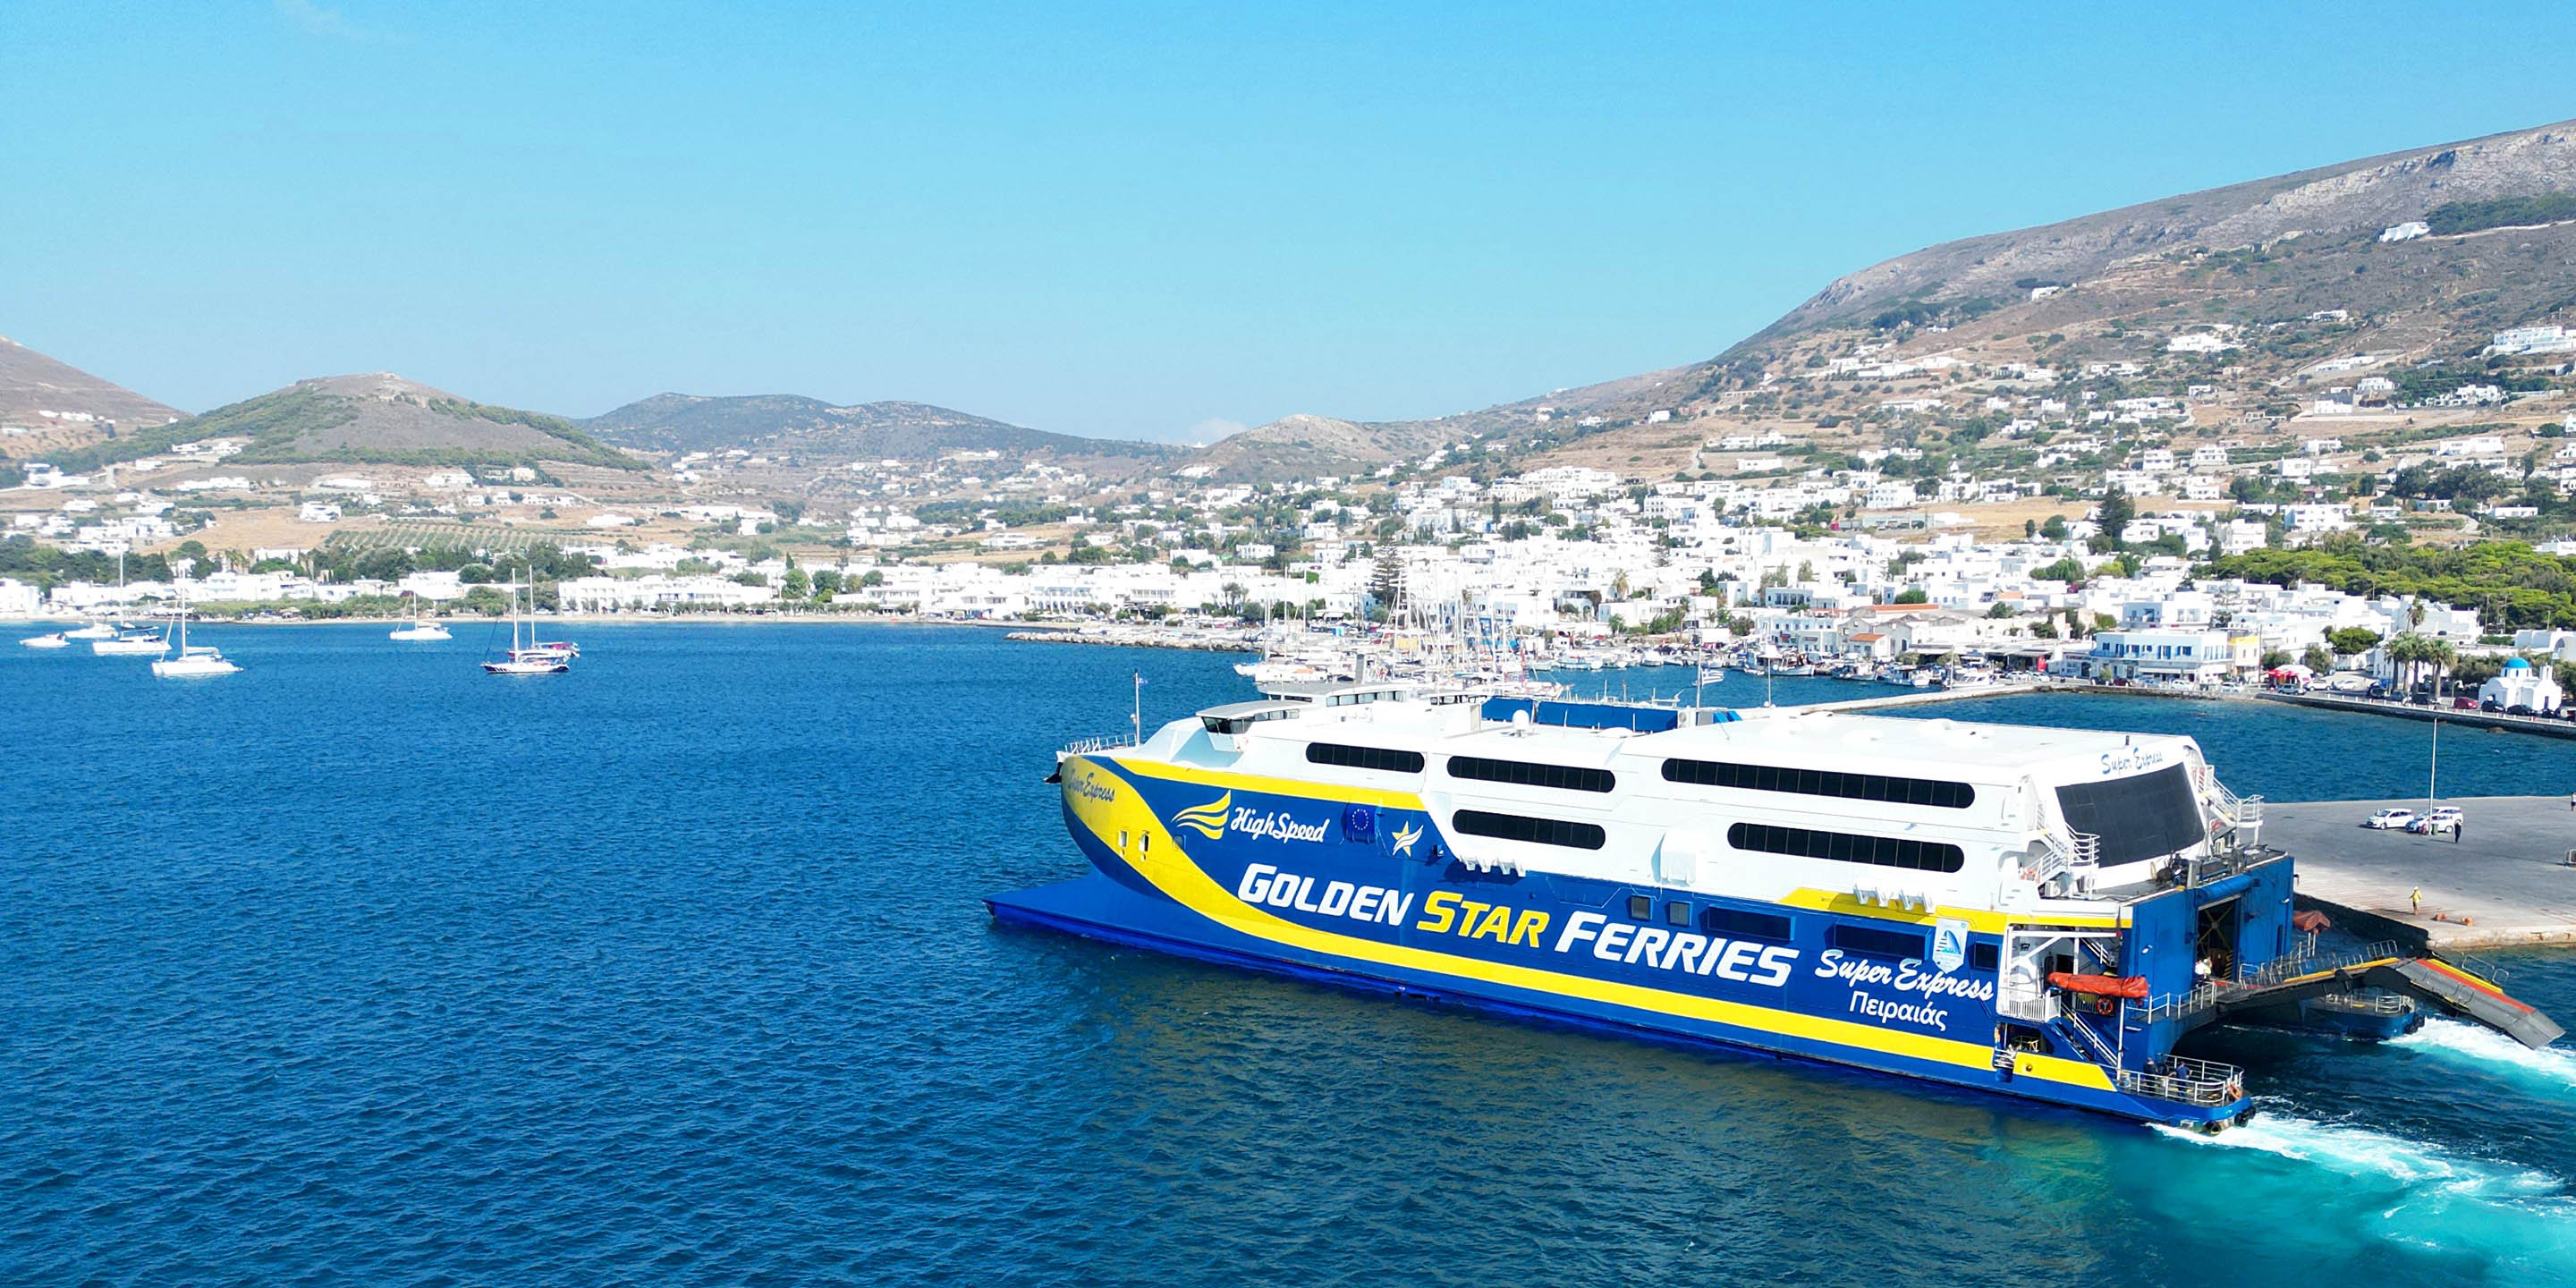 Το ταχύπλοο Super Express της Golden Star ferries φτάνει στο λιμάνι της Παροικιάς στην Πάρο, από τη Σαντορίνη